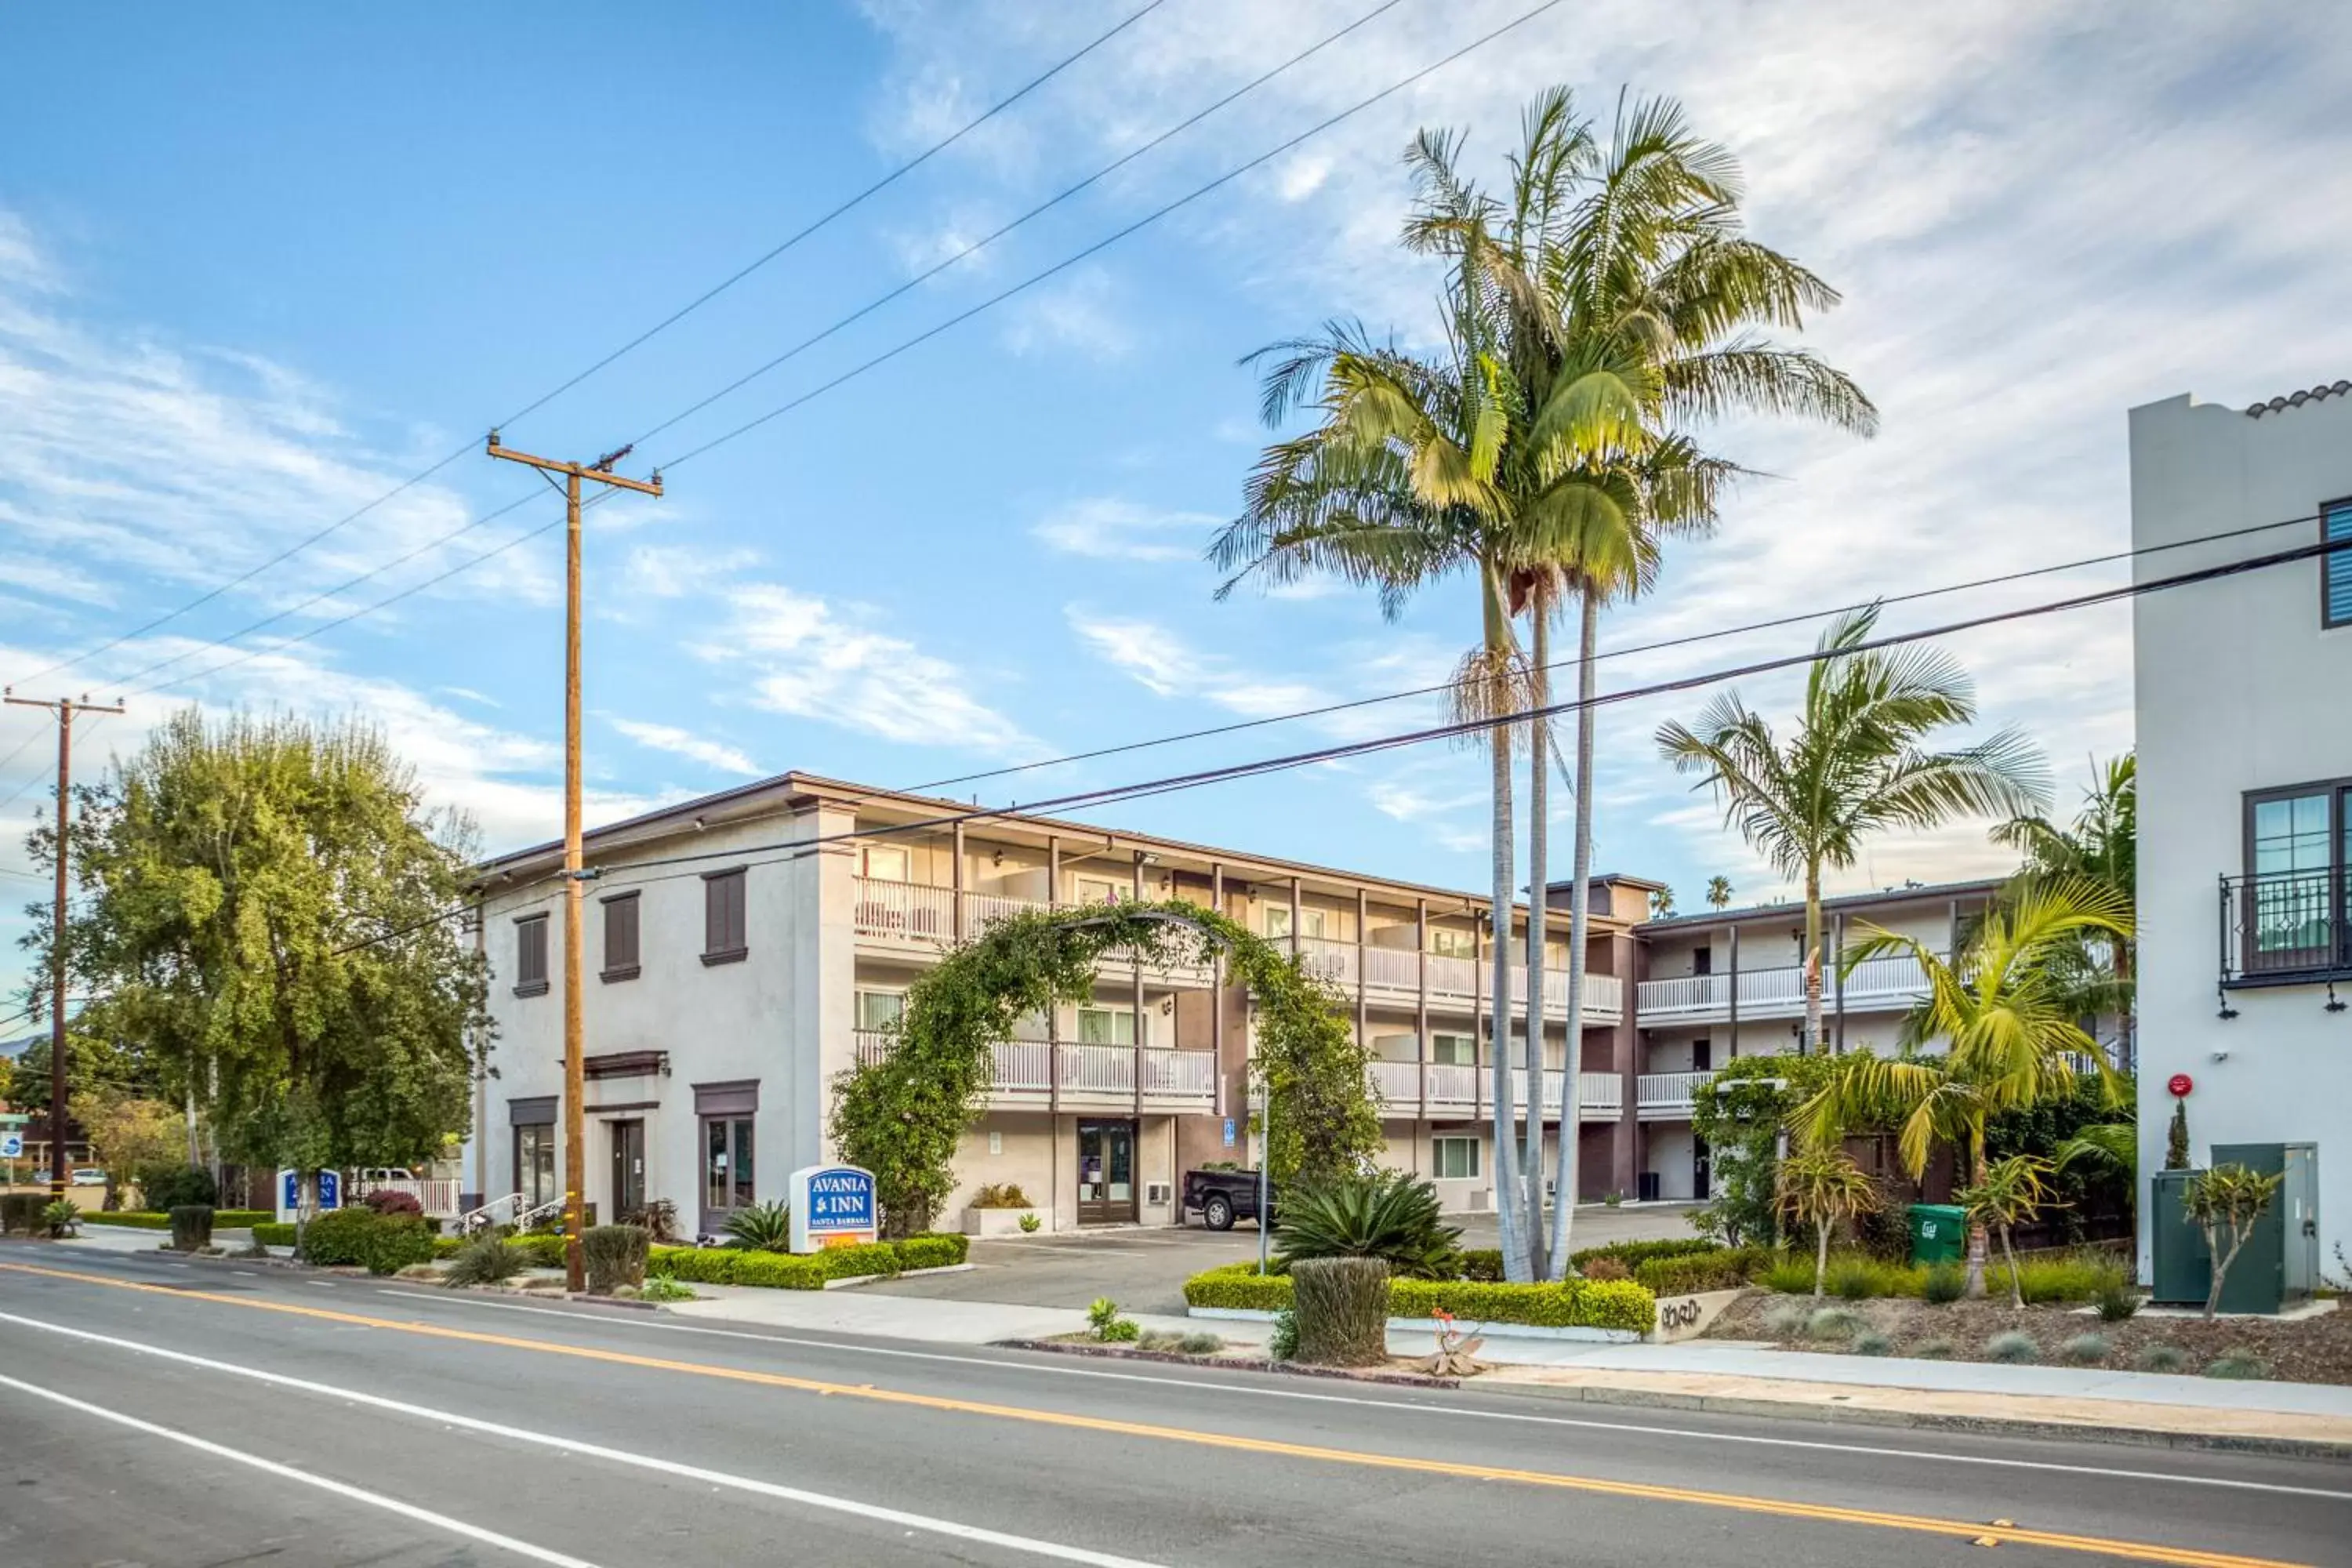 Property Building in Avania Inn of Santa Barbara